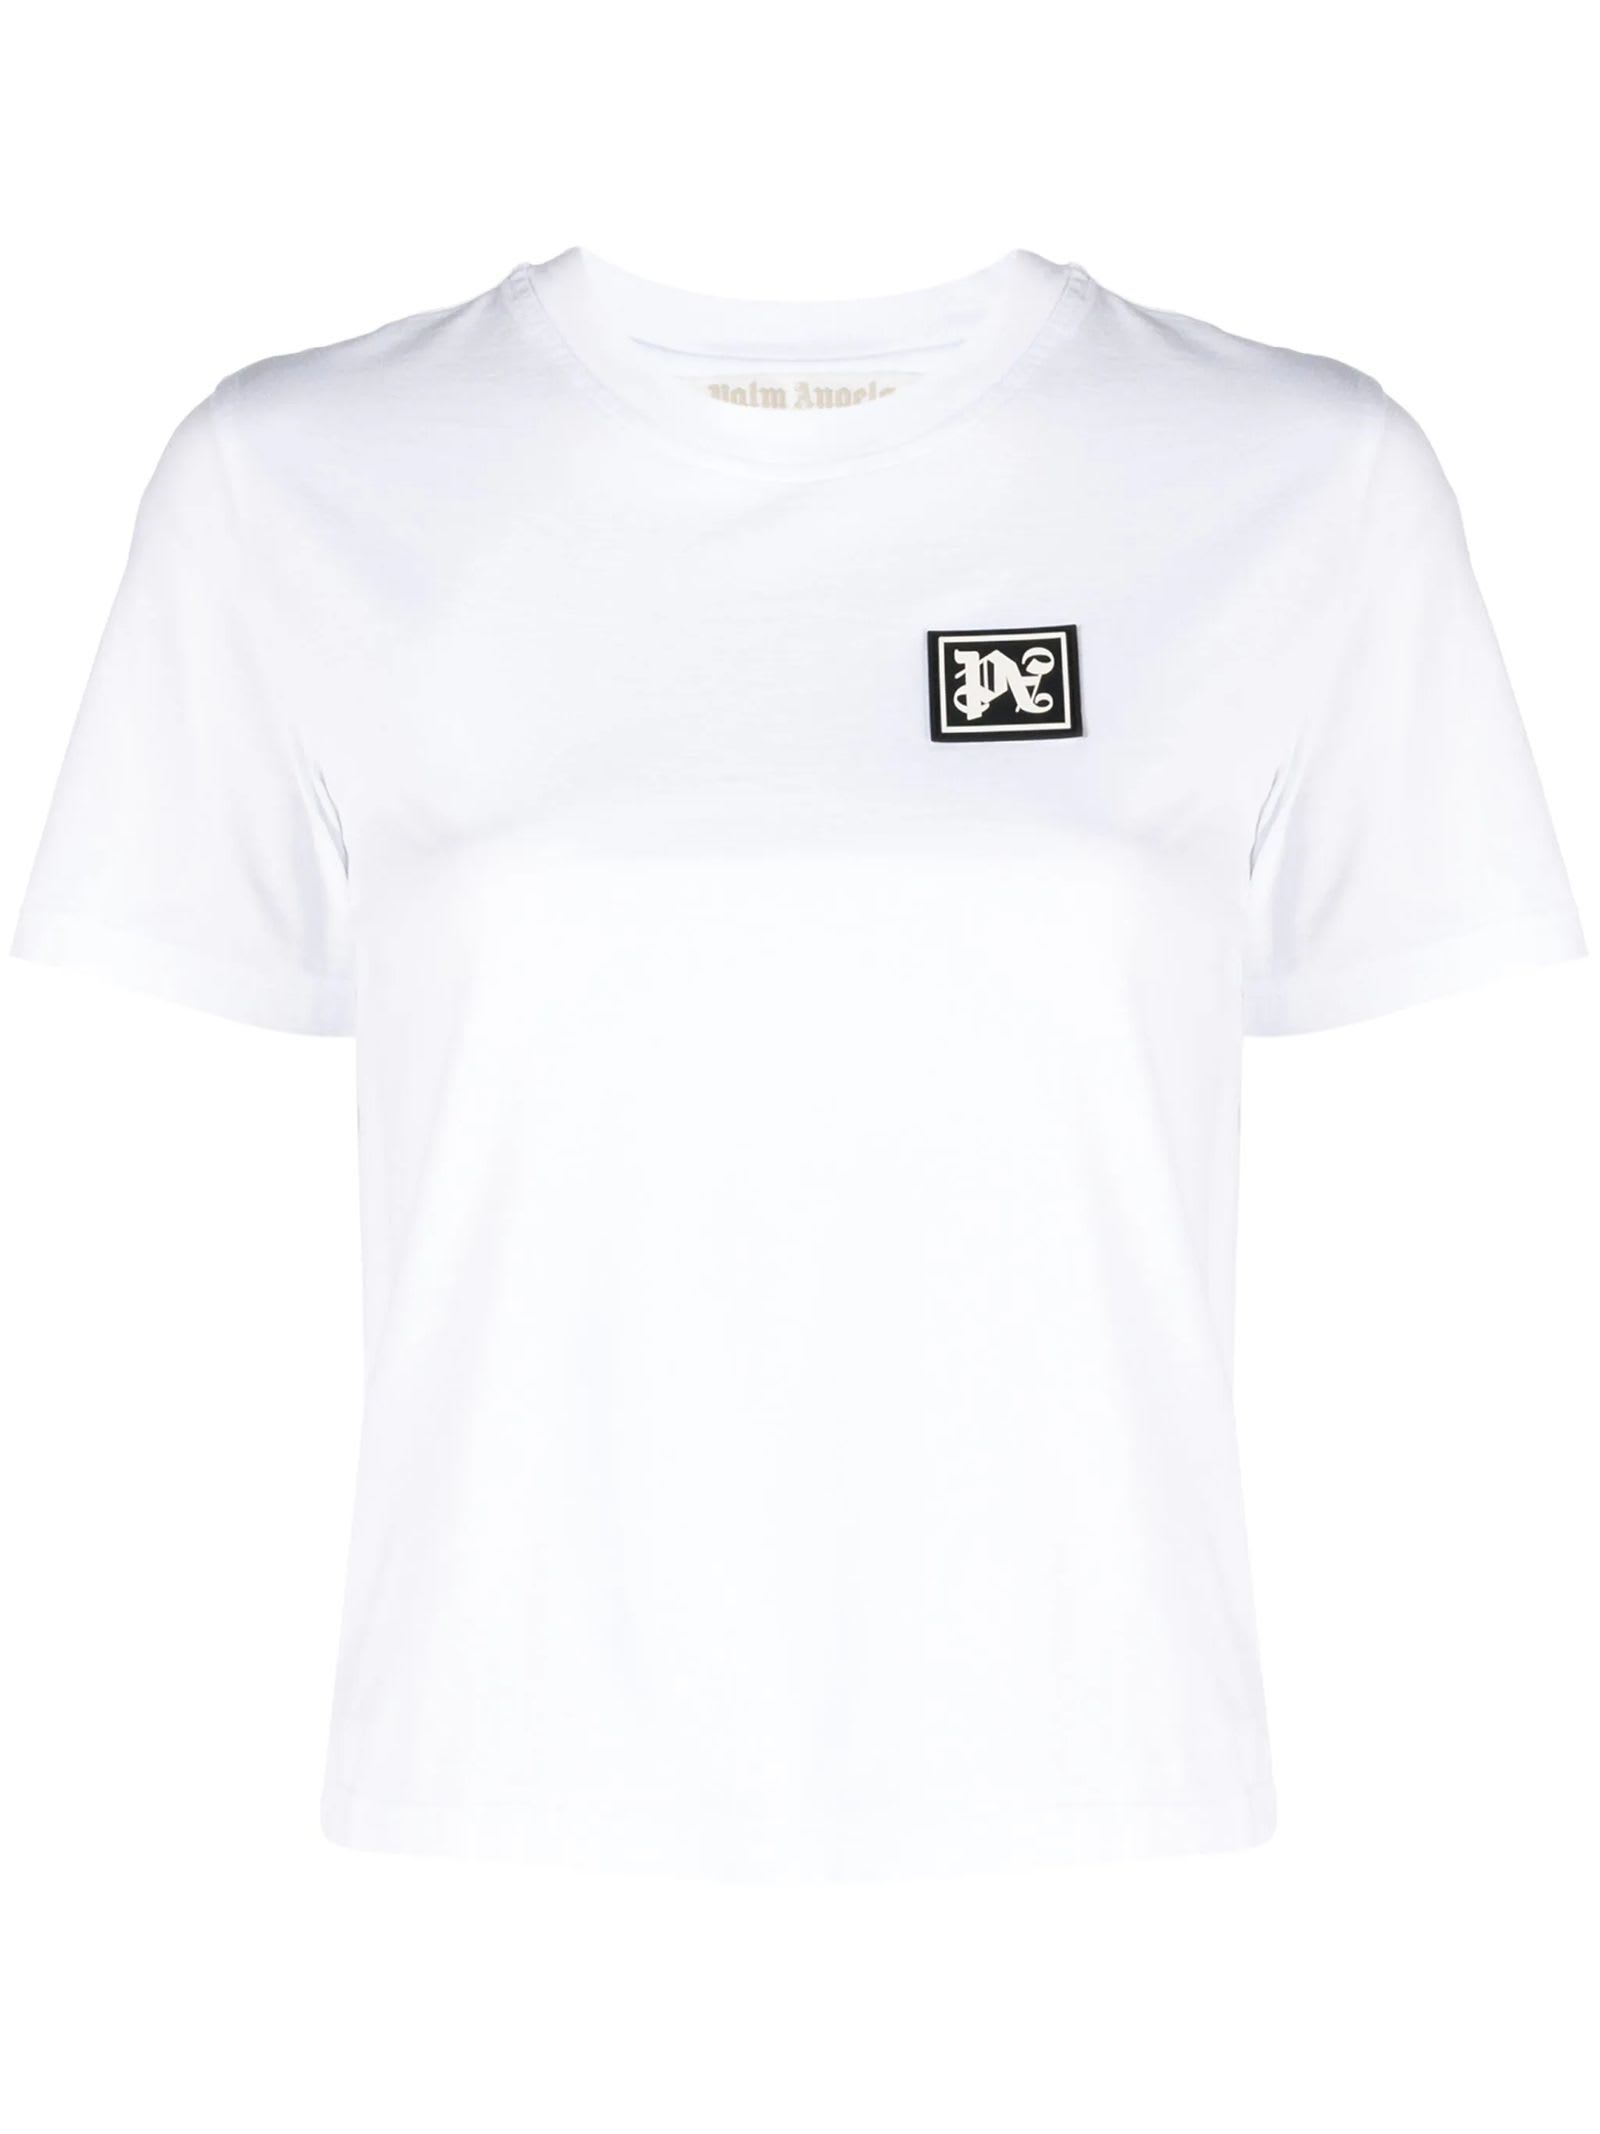 Shop Palm Angels White Cotton T-shirt